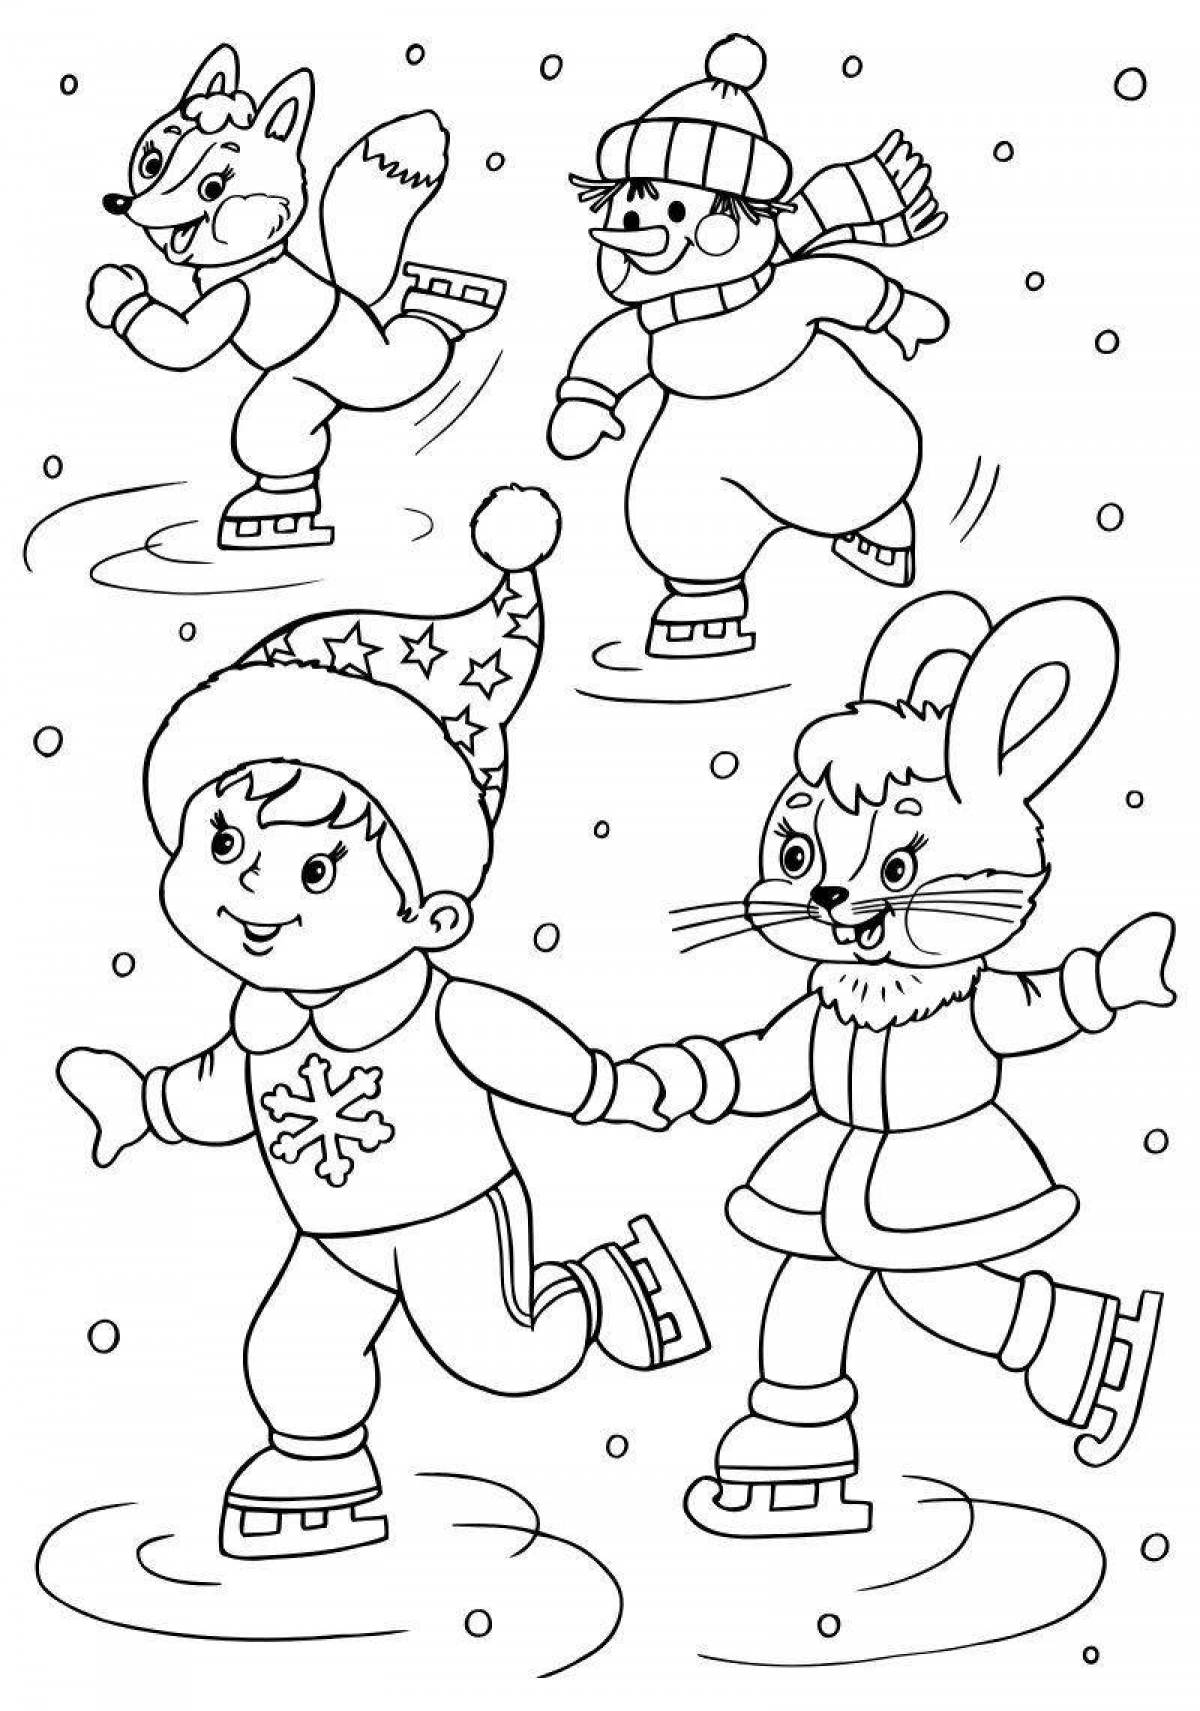 Фантастическая зимняя раскраска для детей 4-5 лет